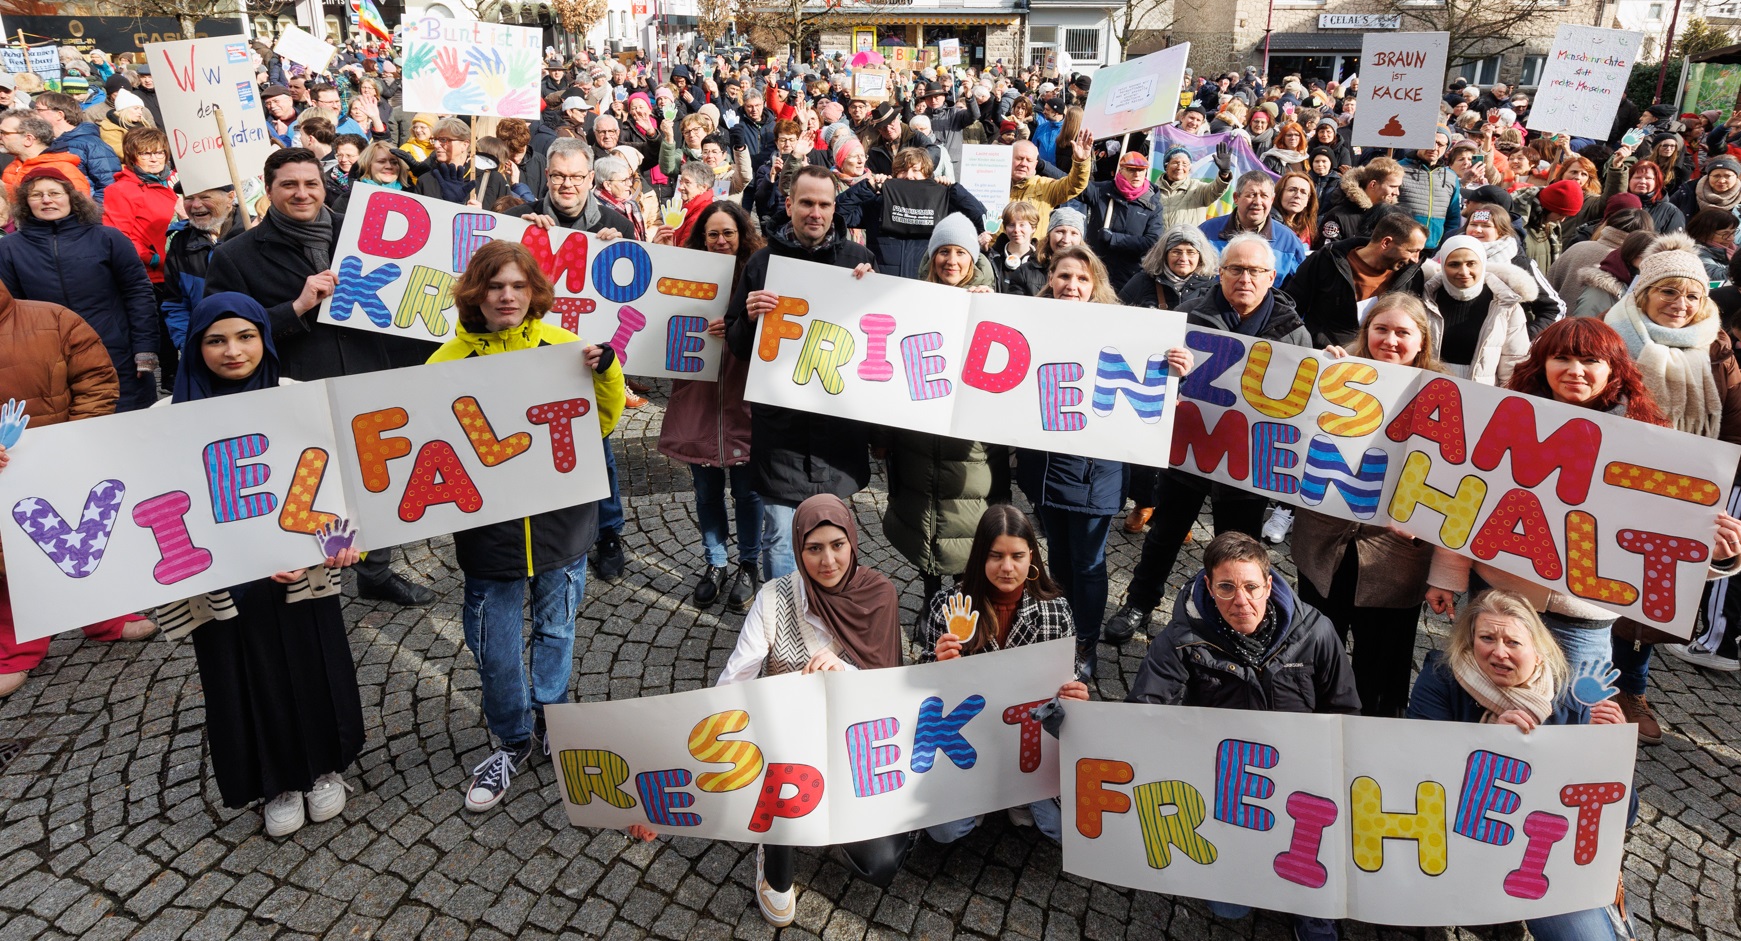 Westerburg steht auf: 500 Menschen demonstrieren fr Vielfalt und Demokratie